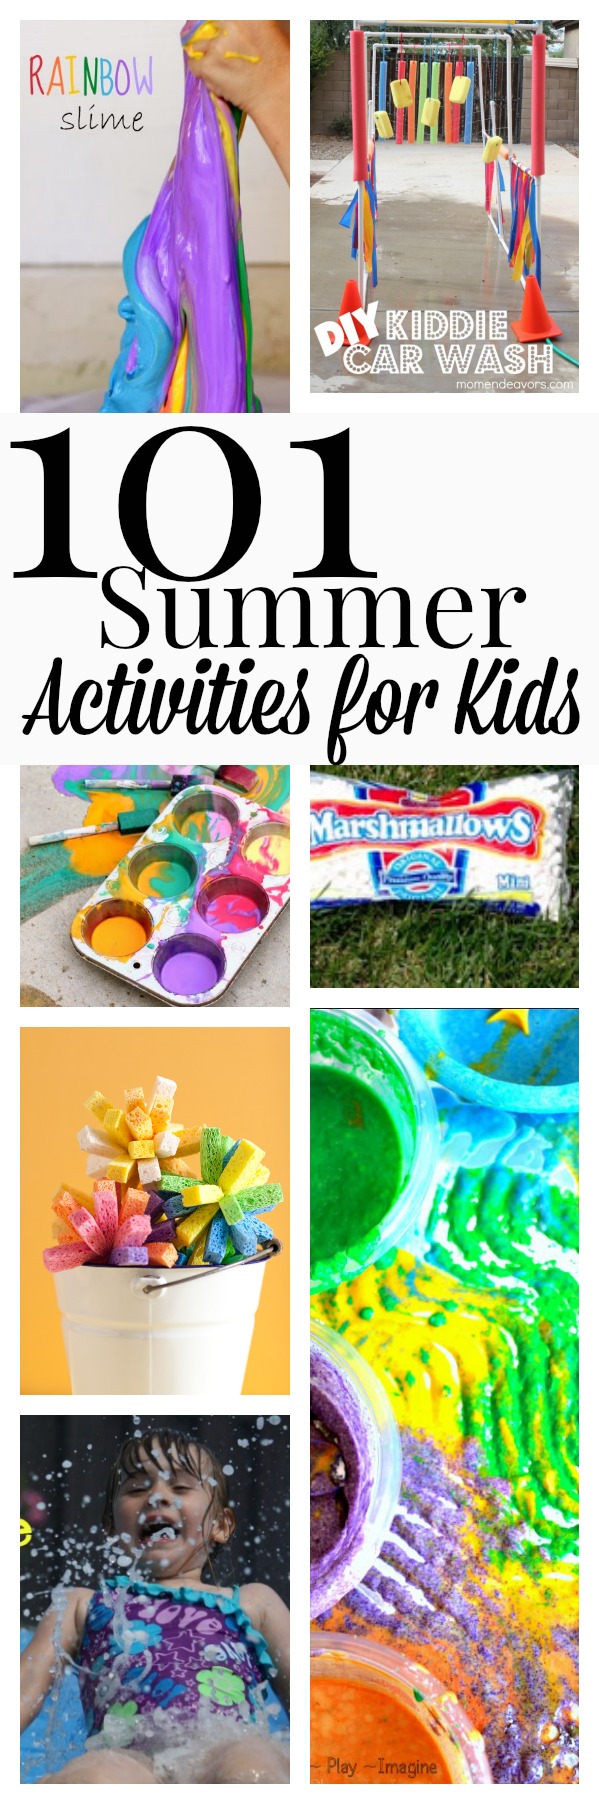 101 Summer Activities for kids